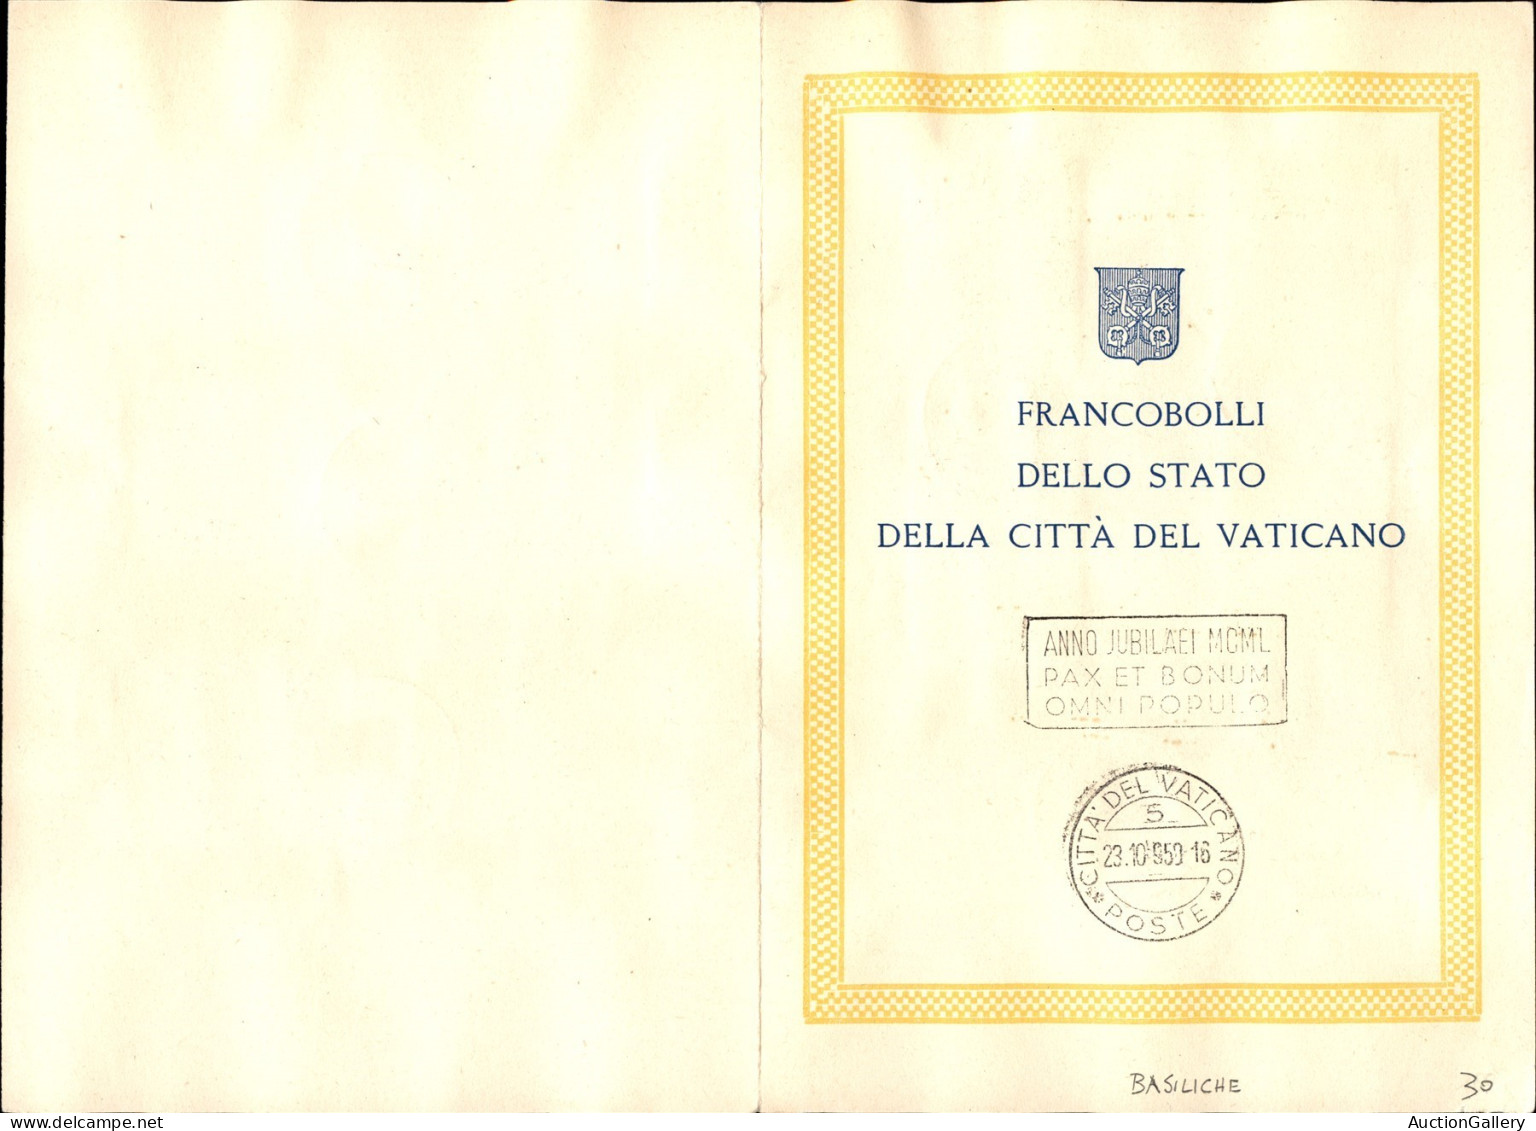 VATICANO - 1949 - Basiliche (122/131+11/12 espressi) - emissione completa - usati su folder ufficiale